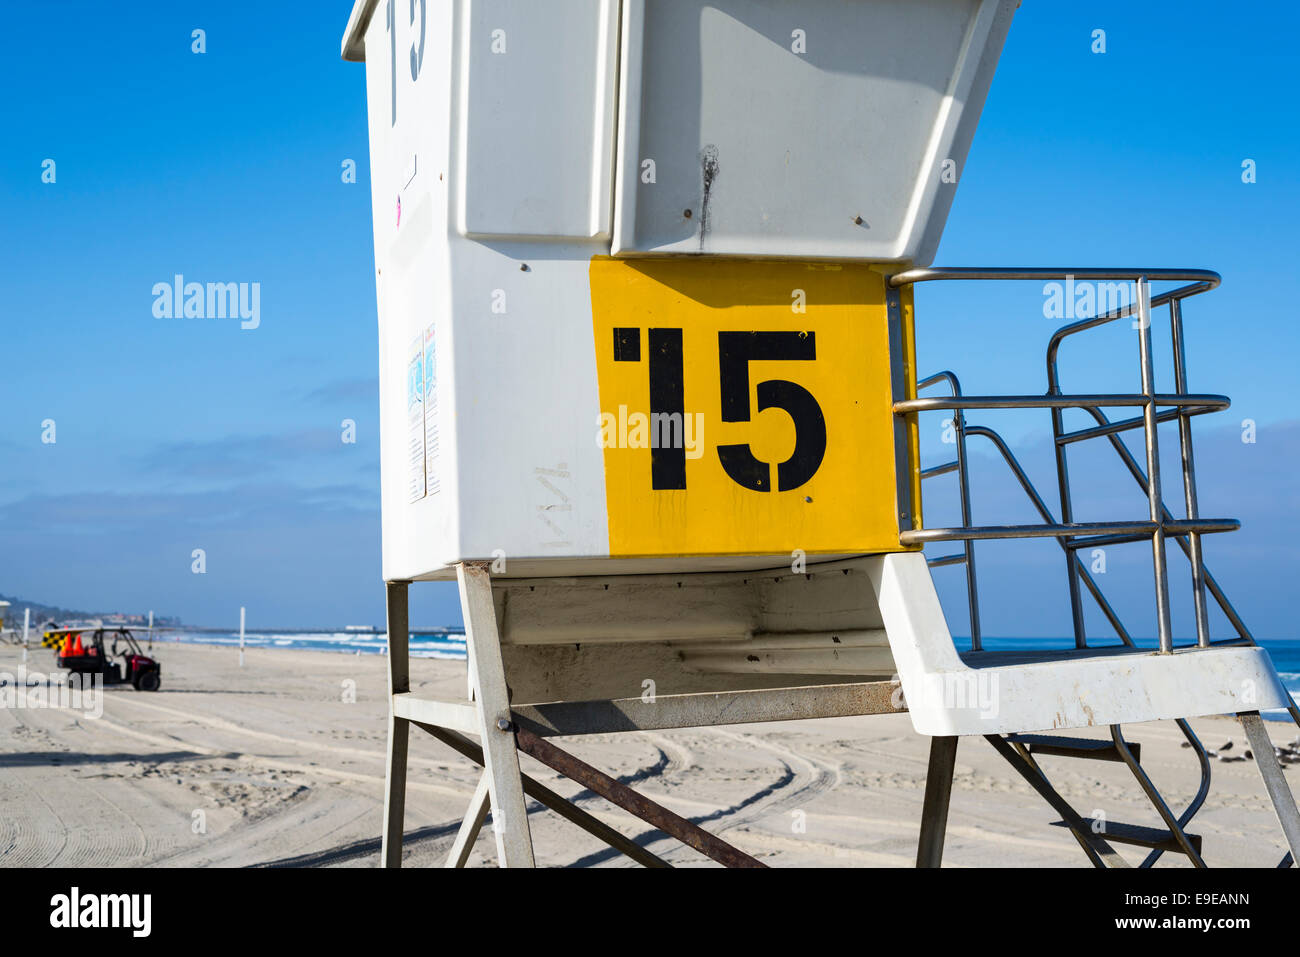 Rettungsschwimmer Turm Nummer 15 am Mission Beach. San Diego, California, Vereinigte Staaten von Amerika. Stockfoto